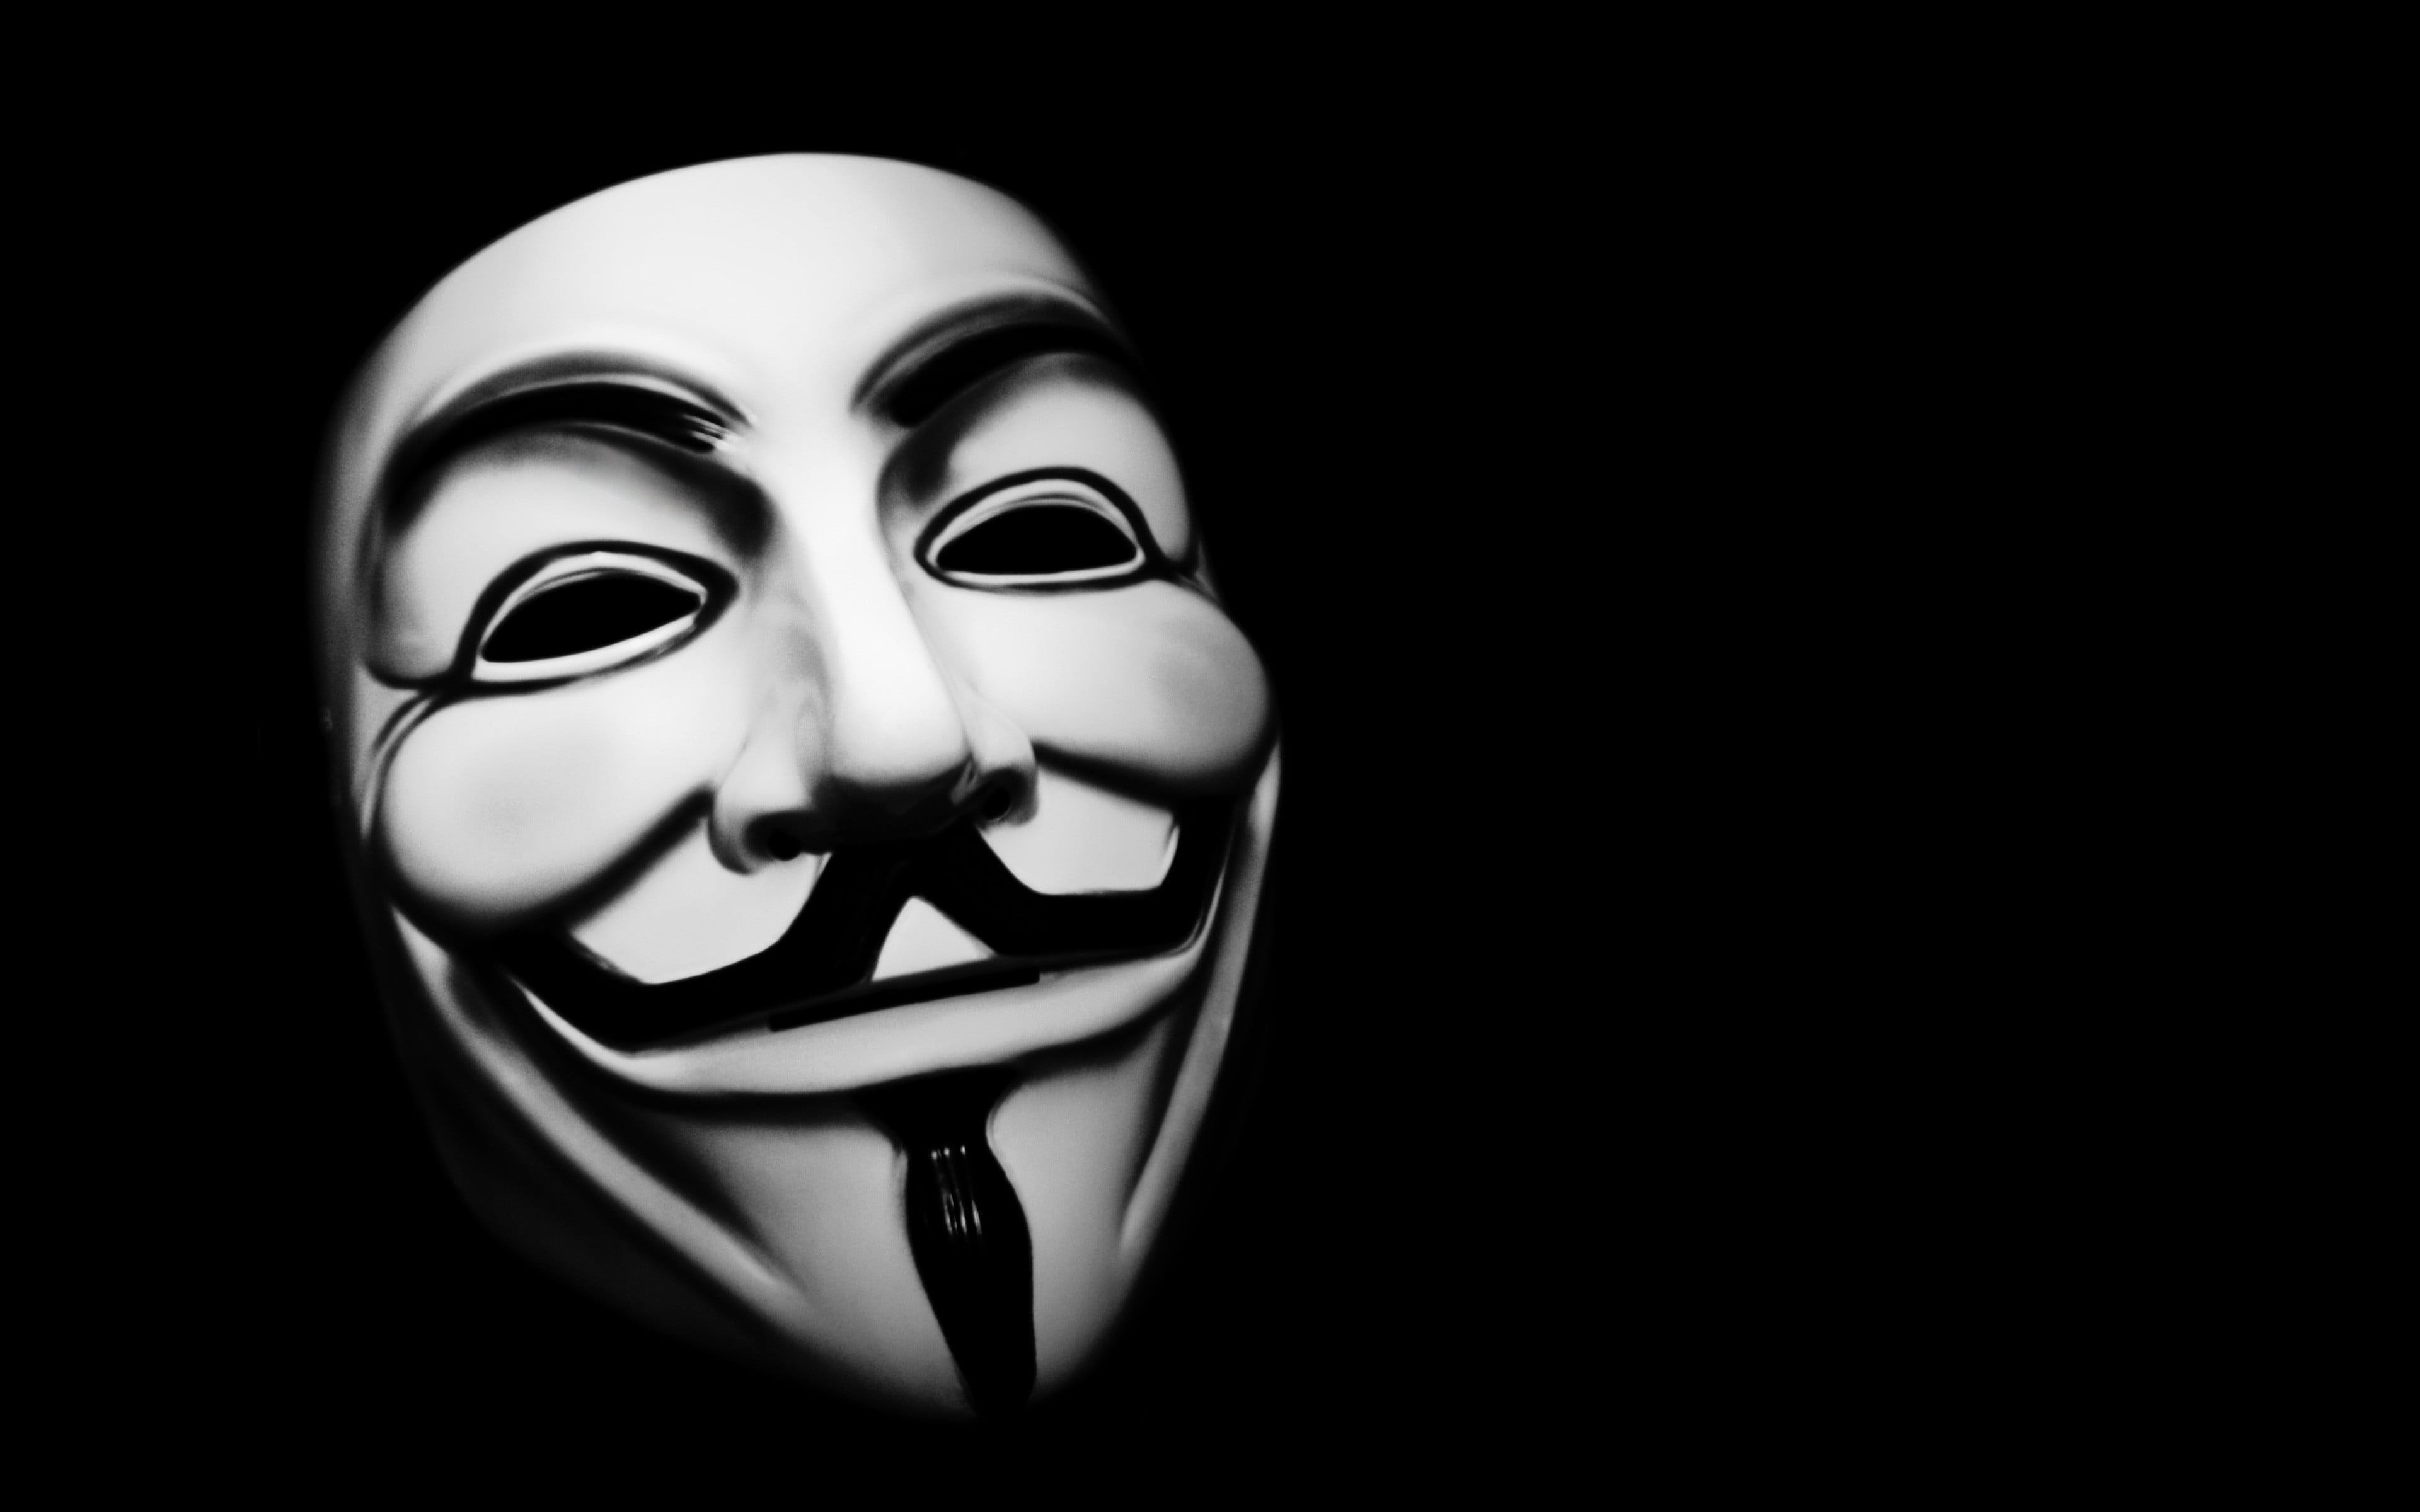 white mask, Guy Fawkes, mask, V for Vendetta, hackers